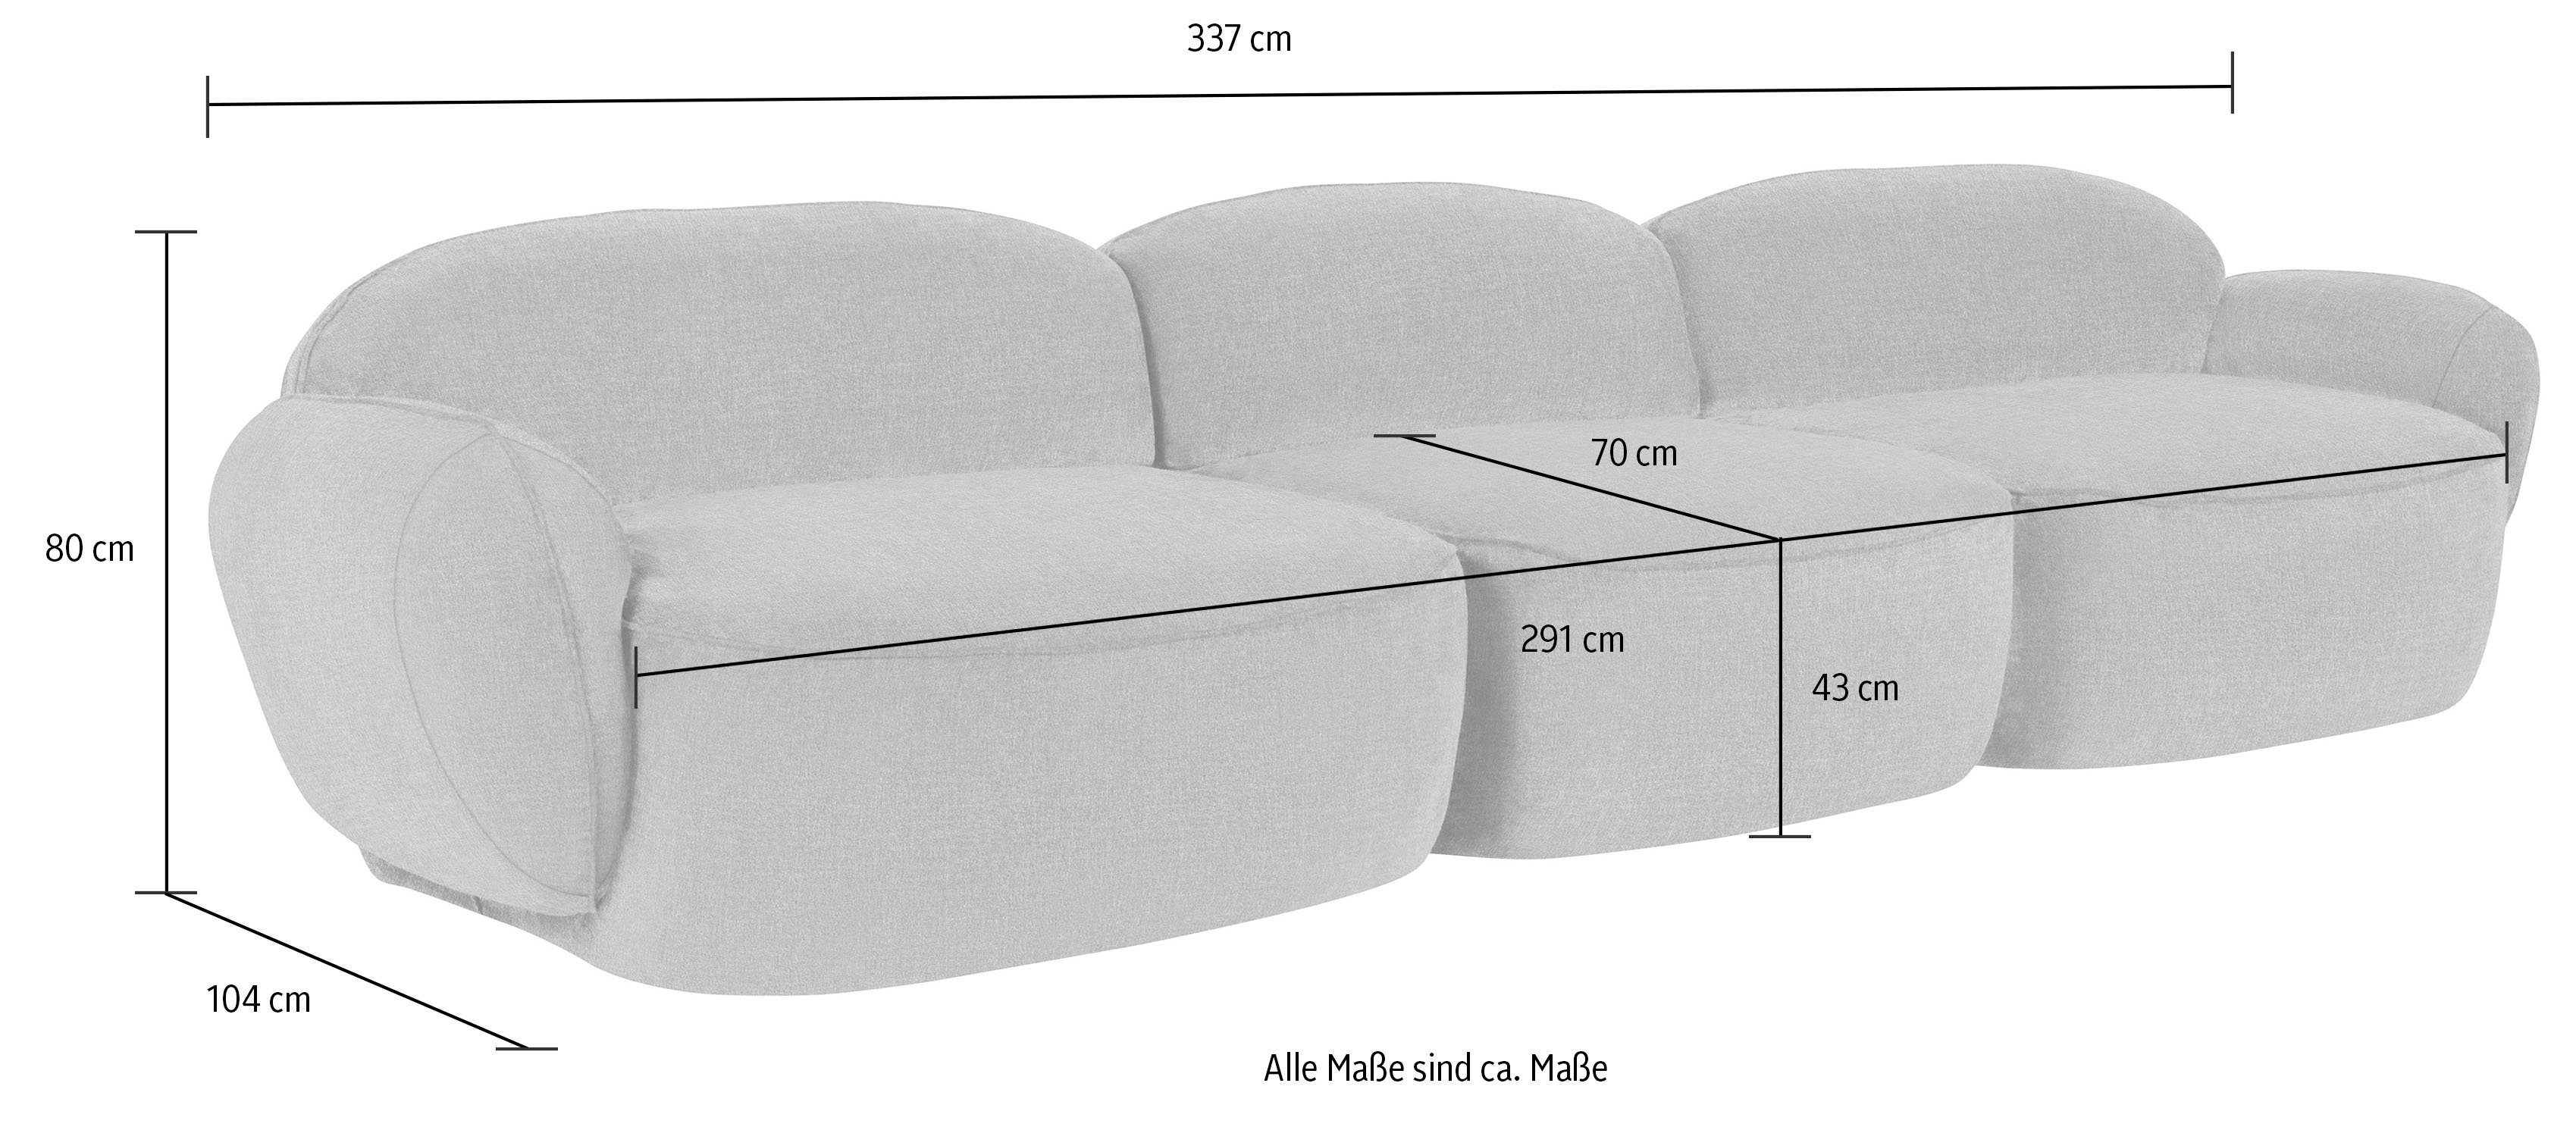 Bubble, Memoryschaum, furninova komfortabel Design im skandinavischen durch 3,5-Sitzer